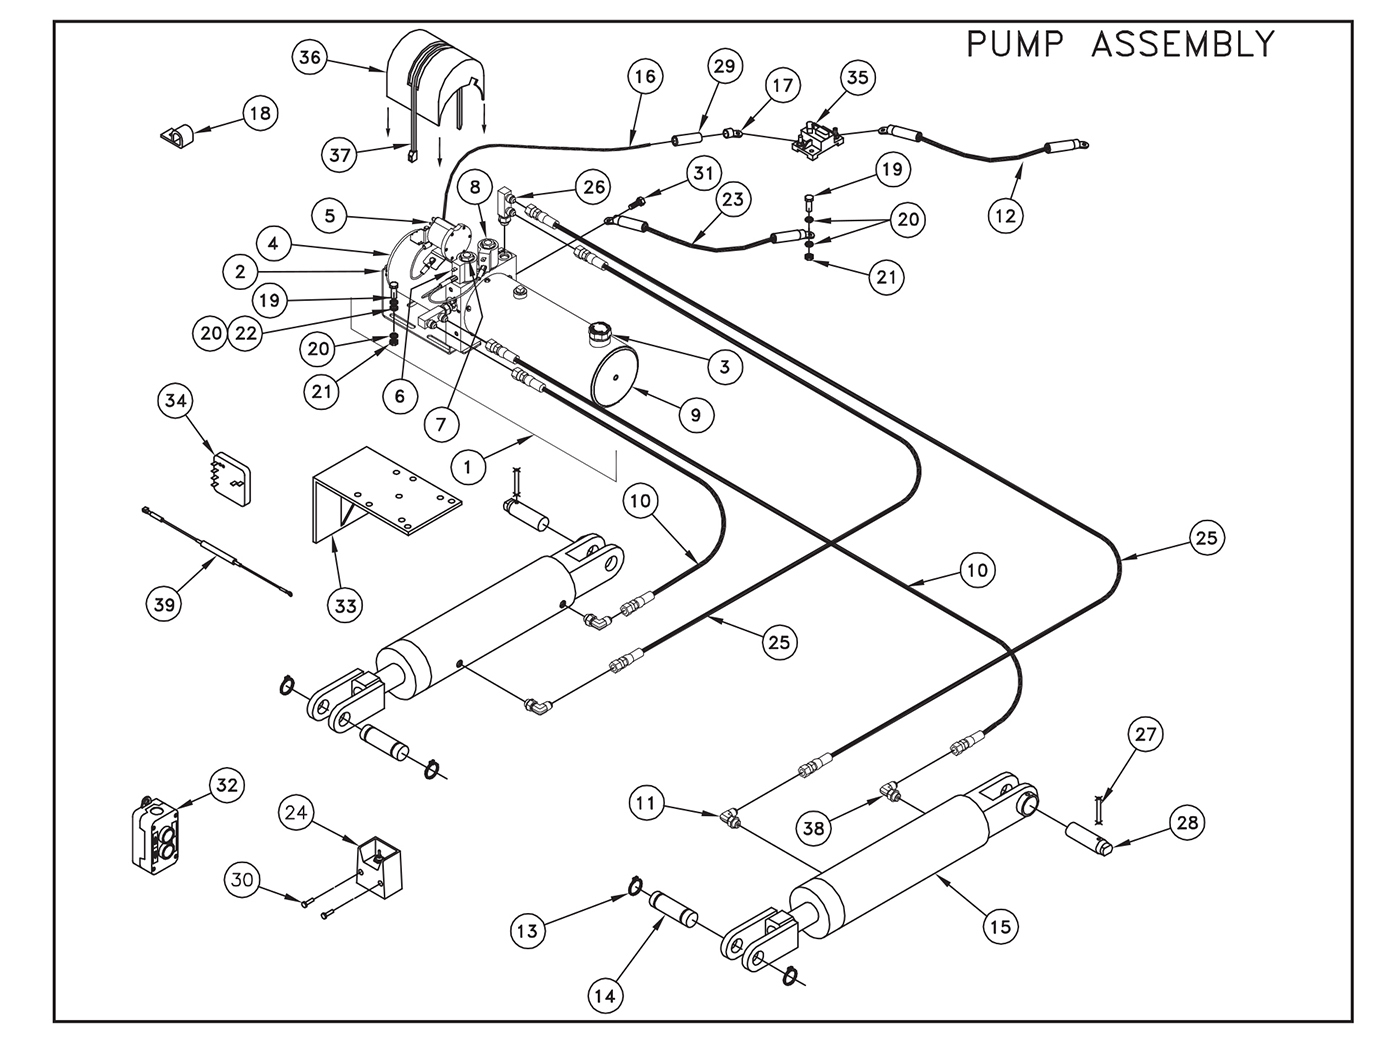 SL15 EST/SL20 EST Pump Assembly Diagram